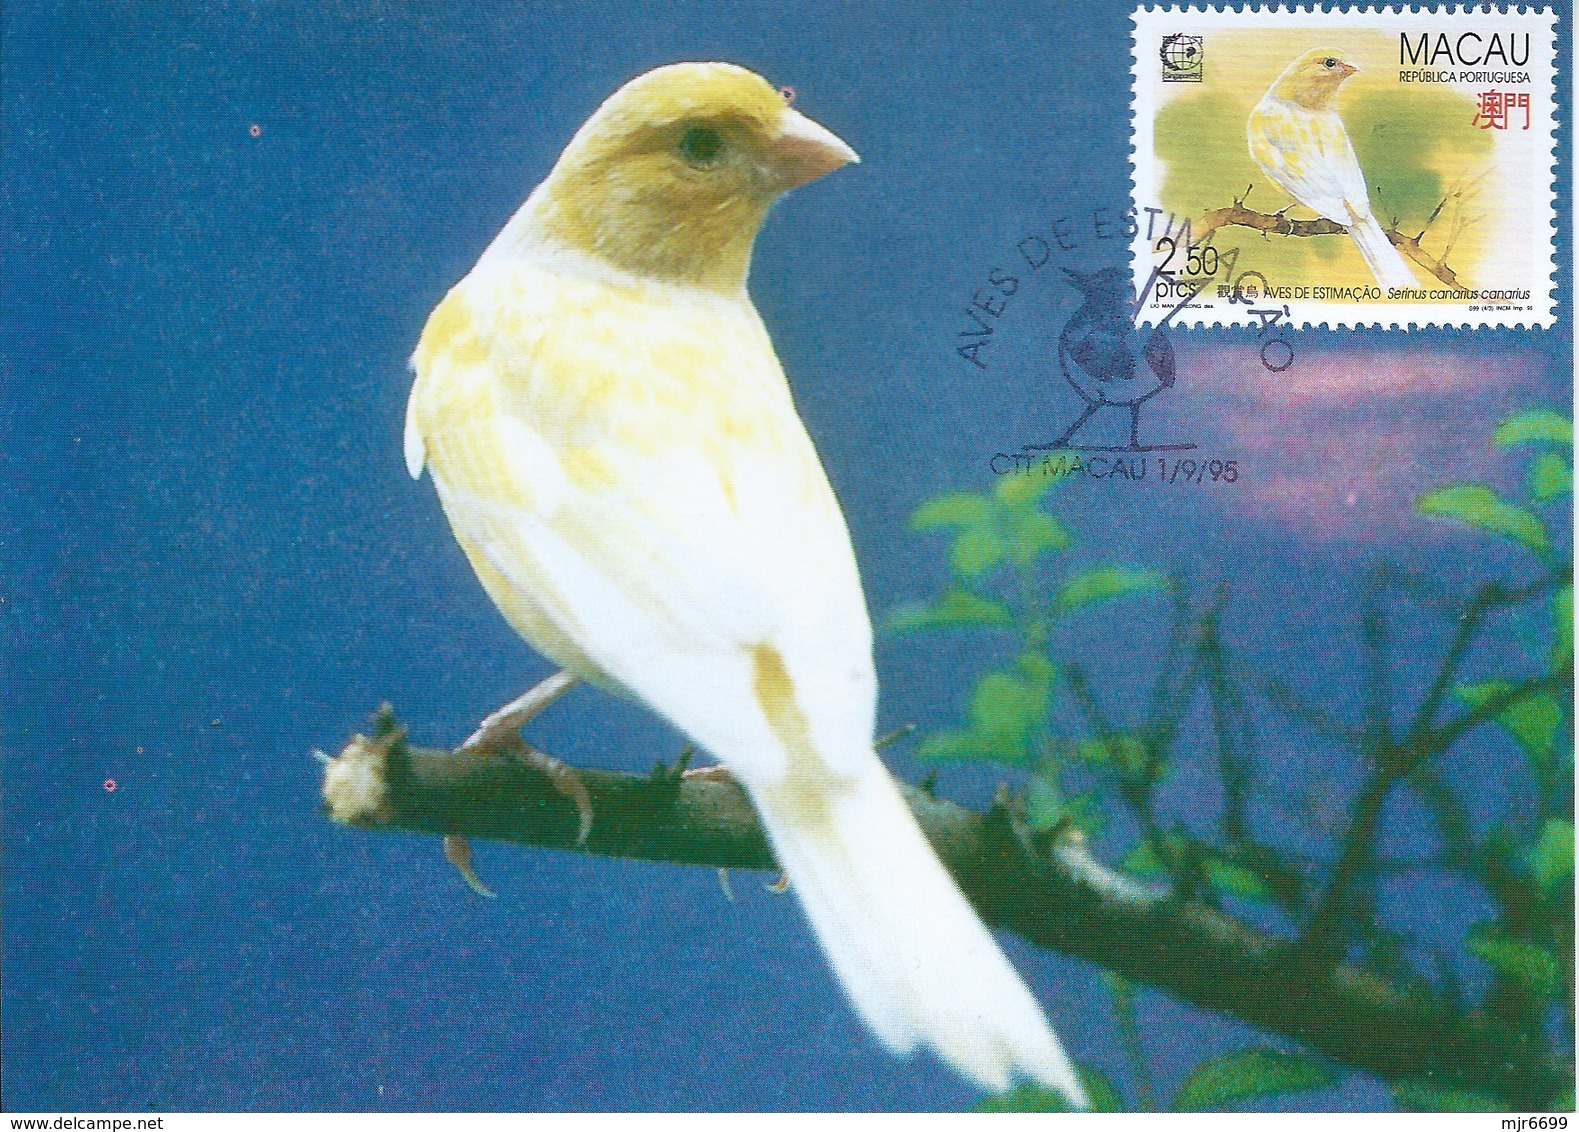 MACAU 1995 BIRDS MAXIMUM CARD - SERINUS CANARIA - Maximumkarten